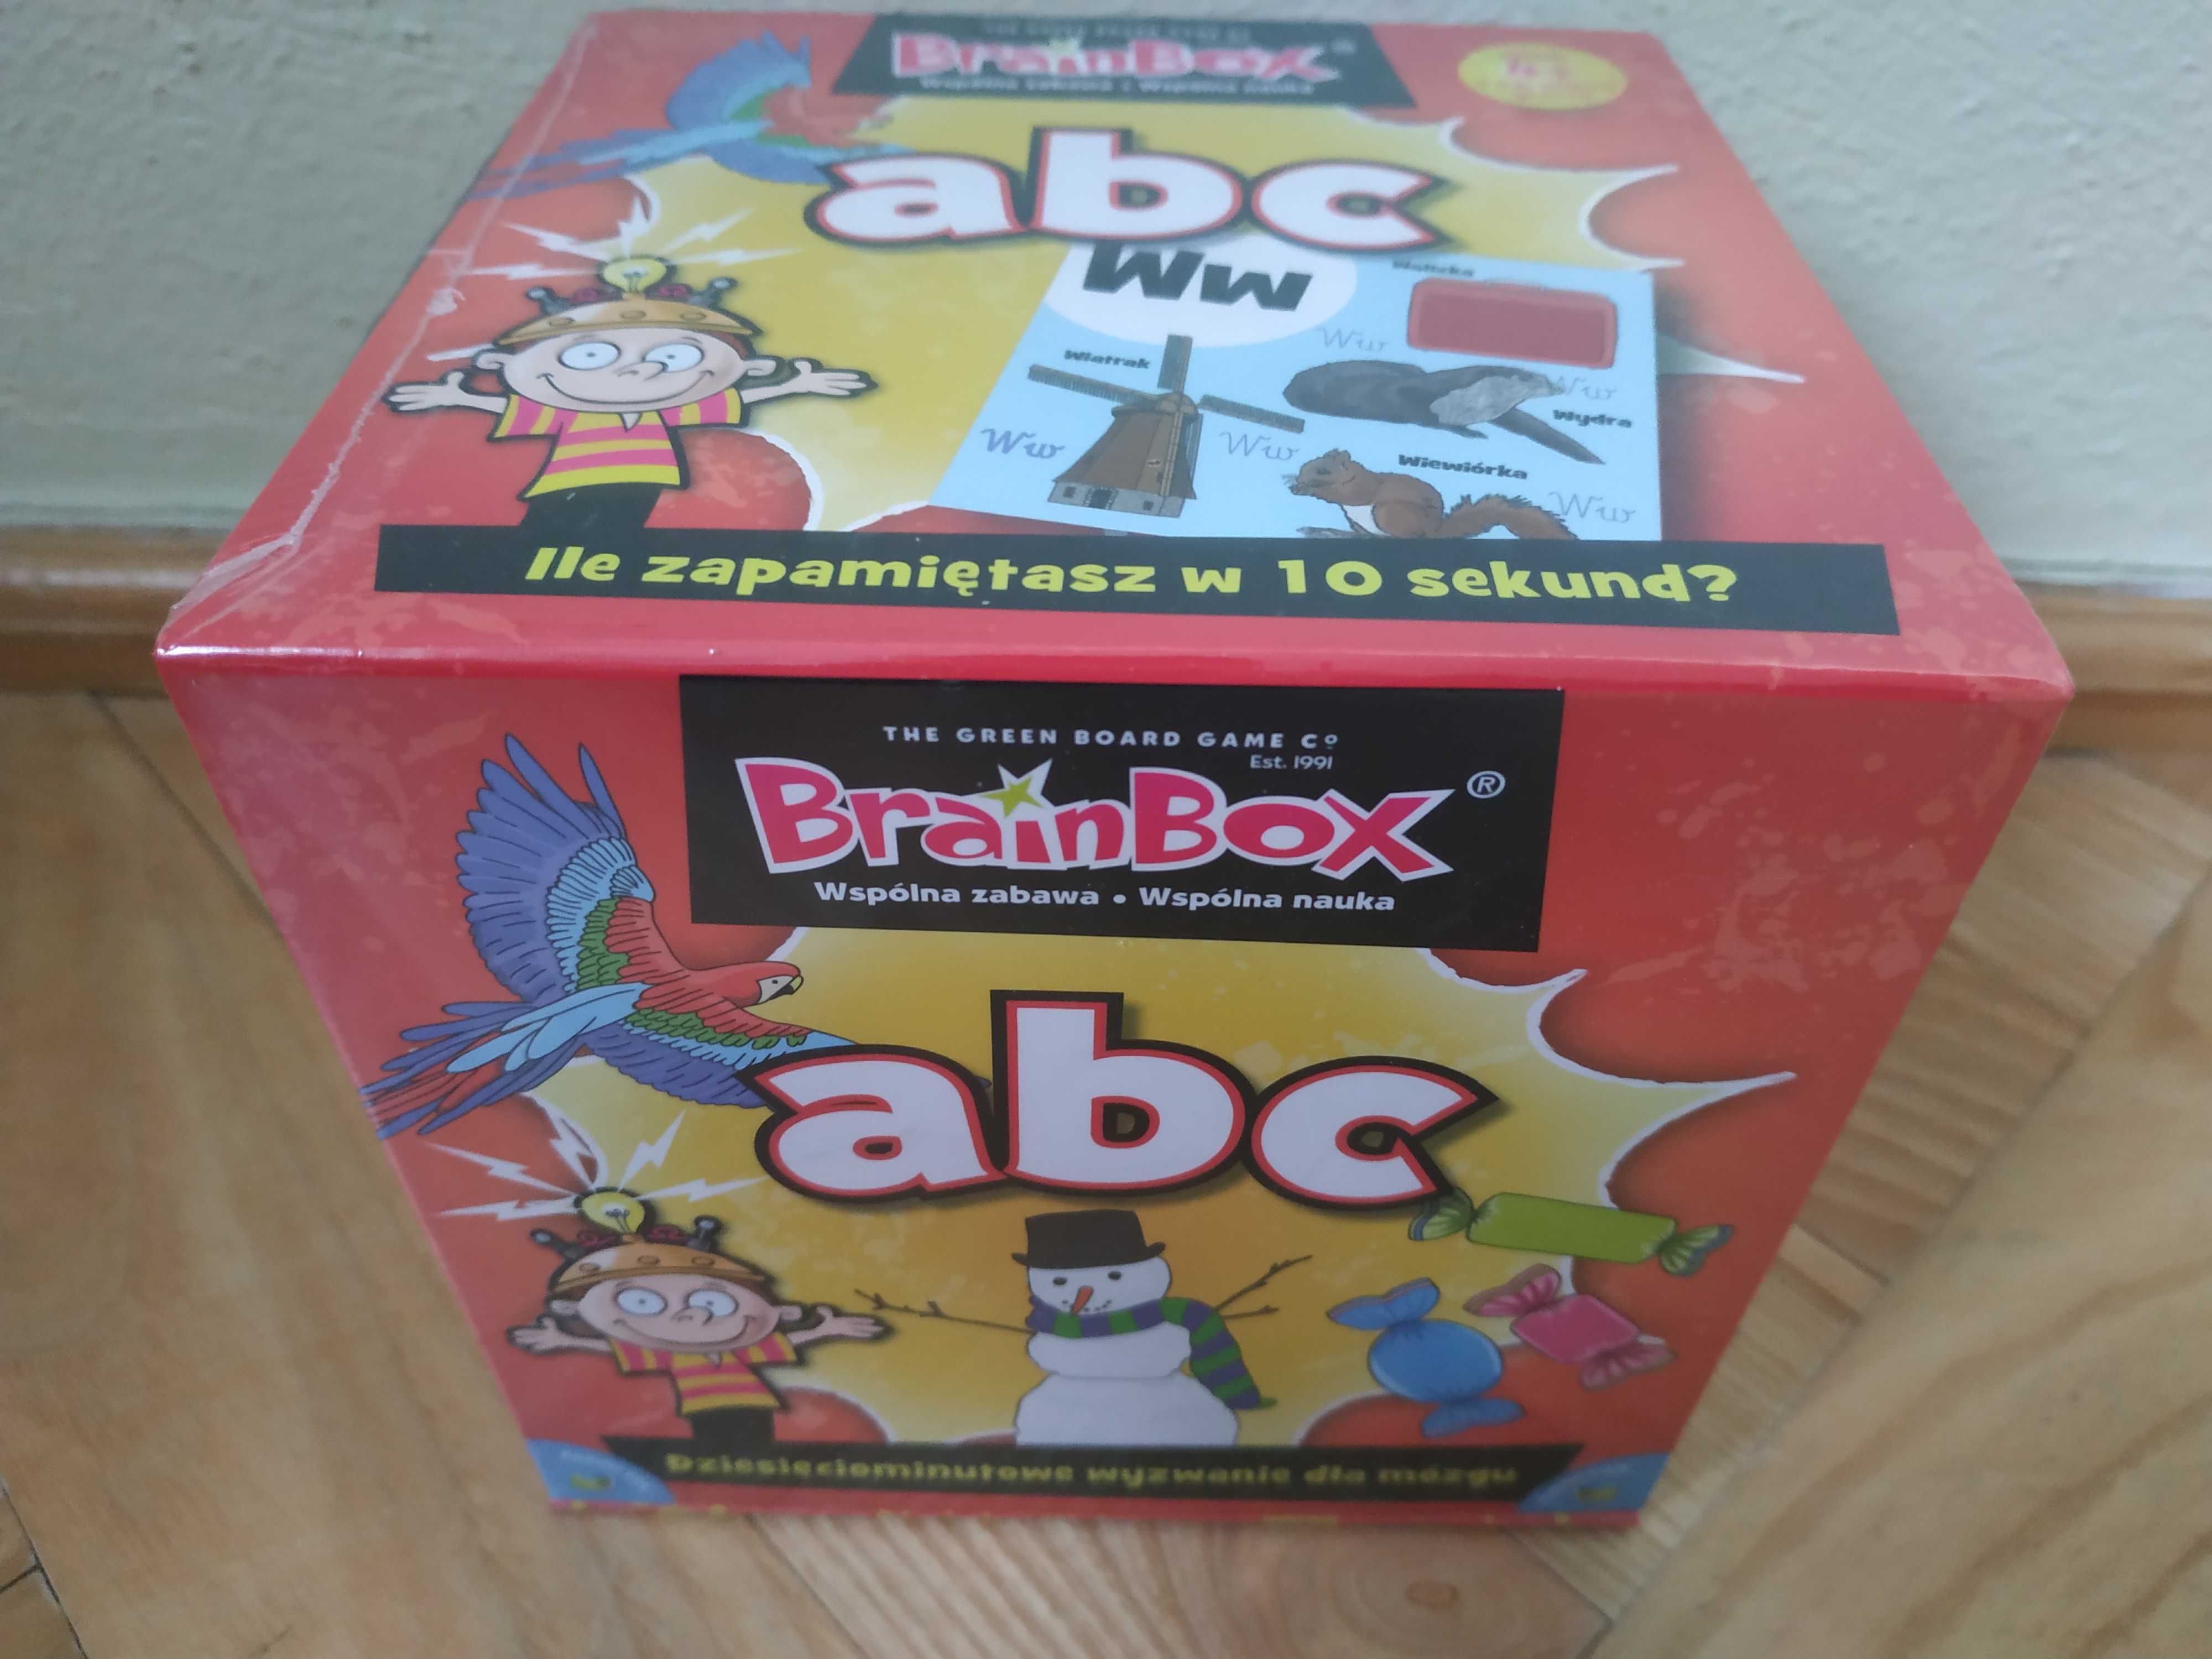 BrainBox Rebel ABC gra wspólna zabawa i nauka - NOWA Warszawa Ursynów